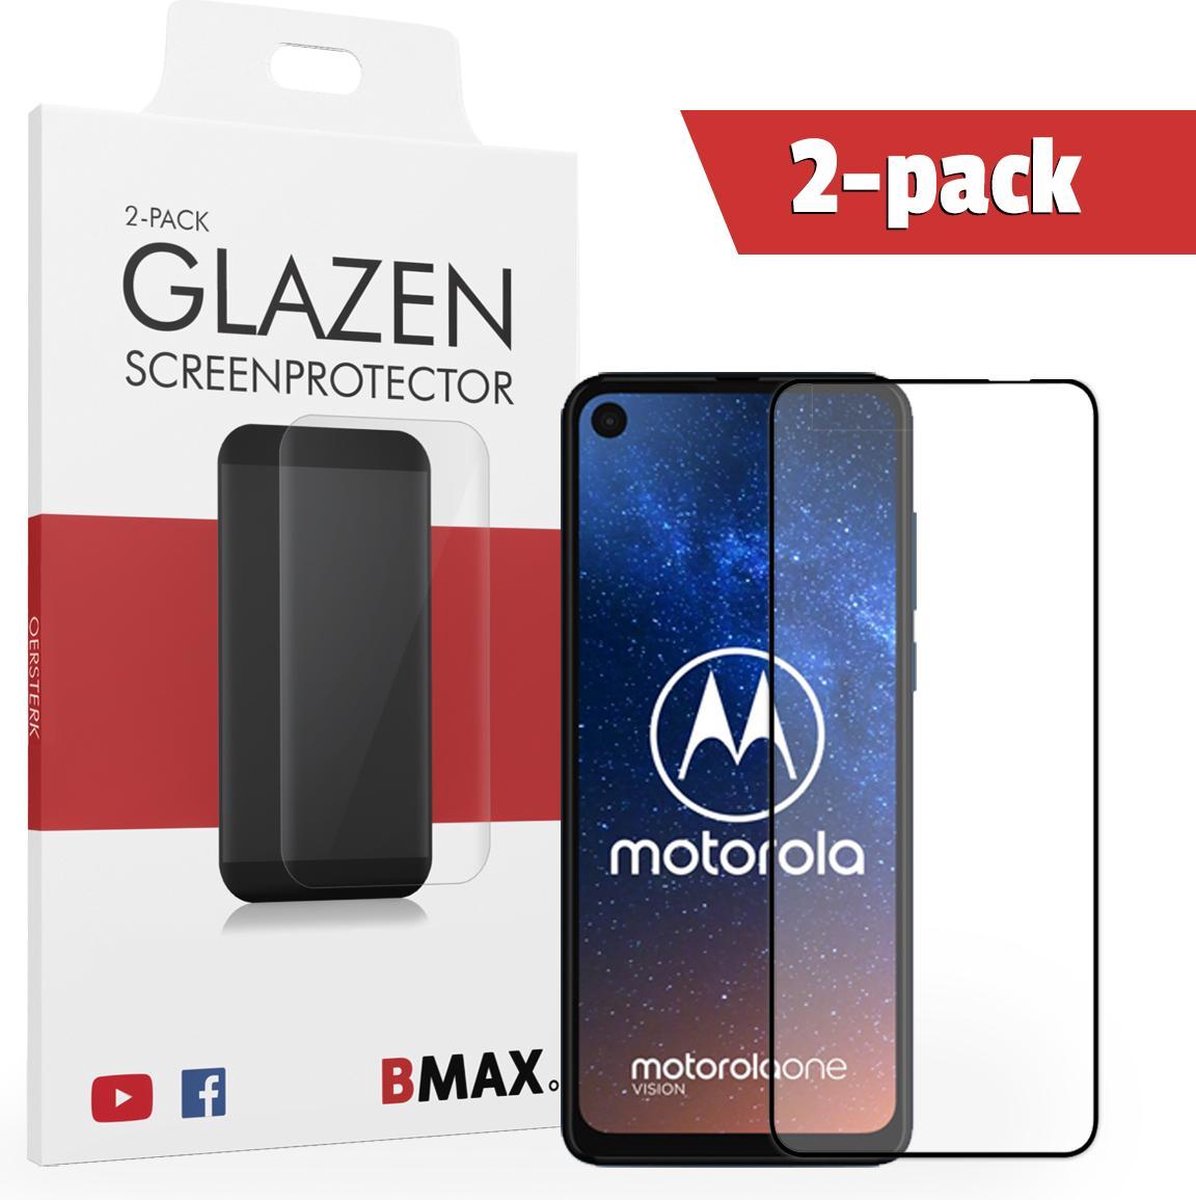 2-pack Bmax Motorola One Vision Screenprotector - Glass - Full Cover 2.5d - Black